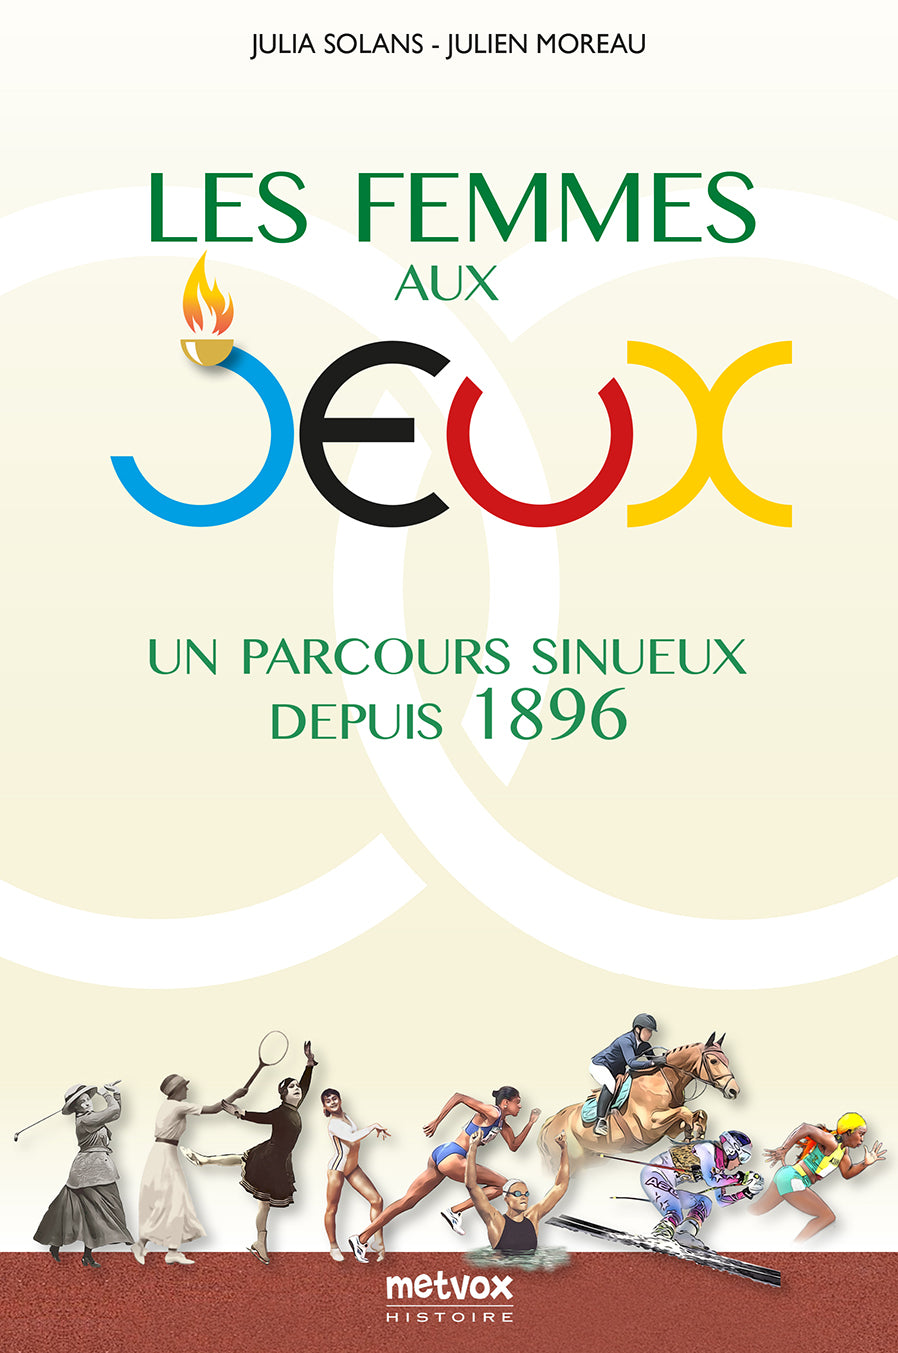 Les Femmes aux Jeux - Un parcours sinueux depuis 1896 - Julia Solans et Julien Moreau (version numérique)